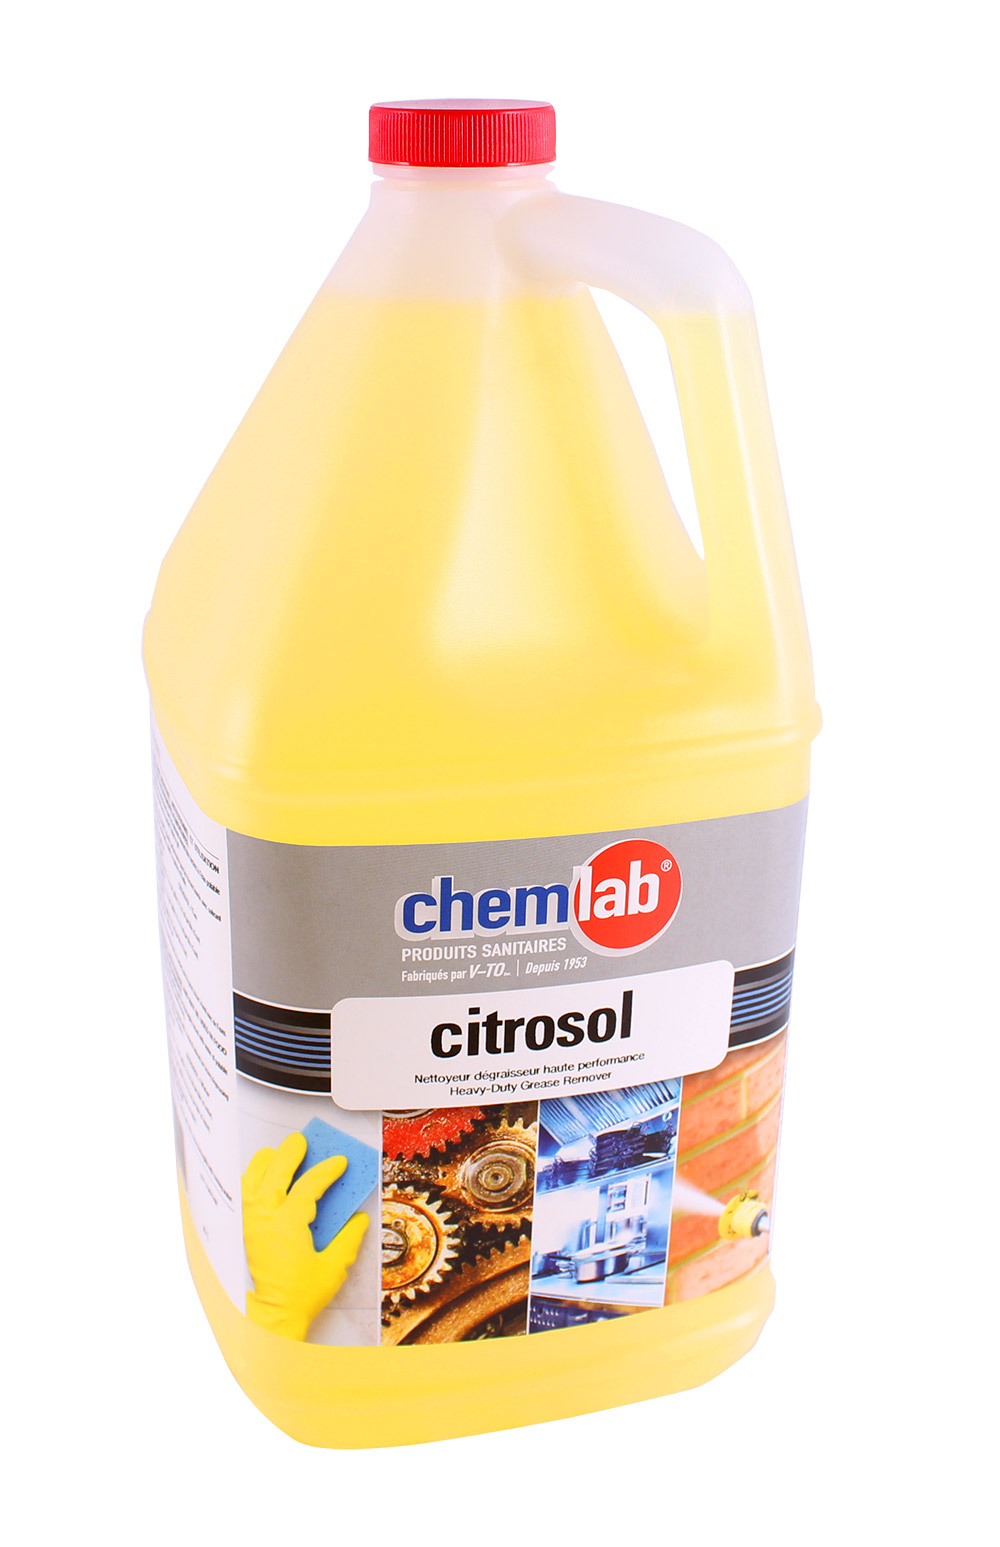 Citrosol – Nettoyant dégraisseur haute performance